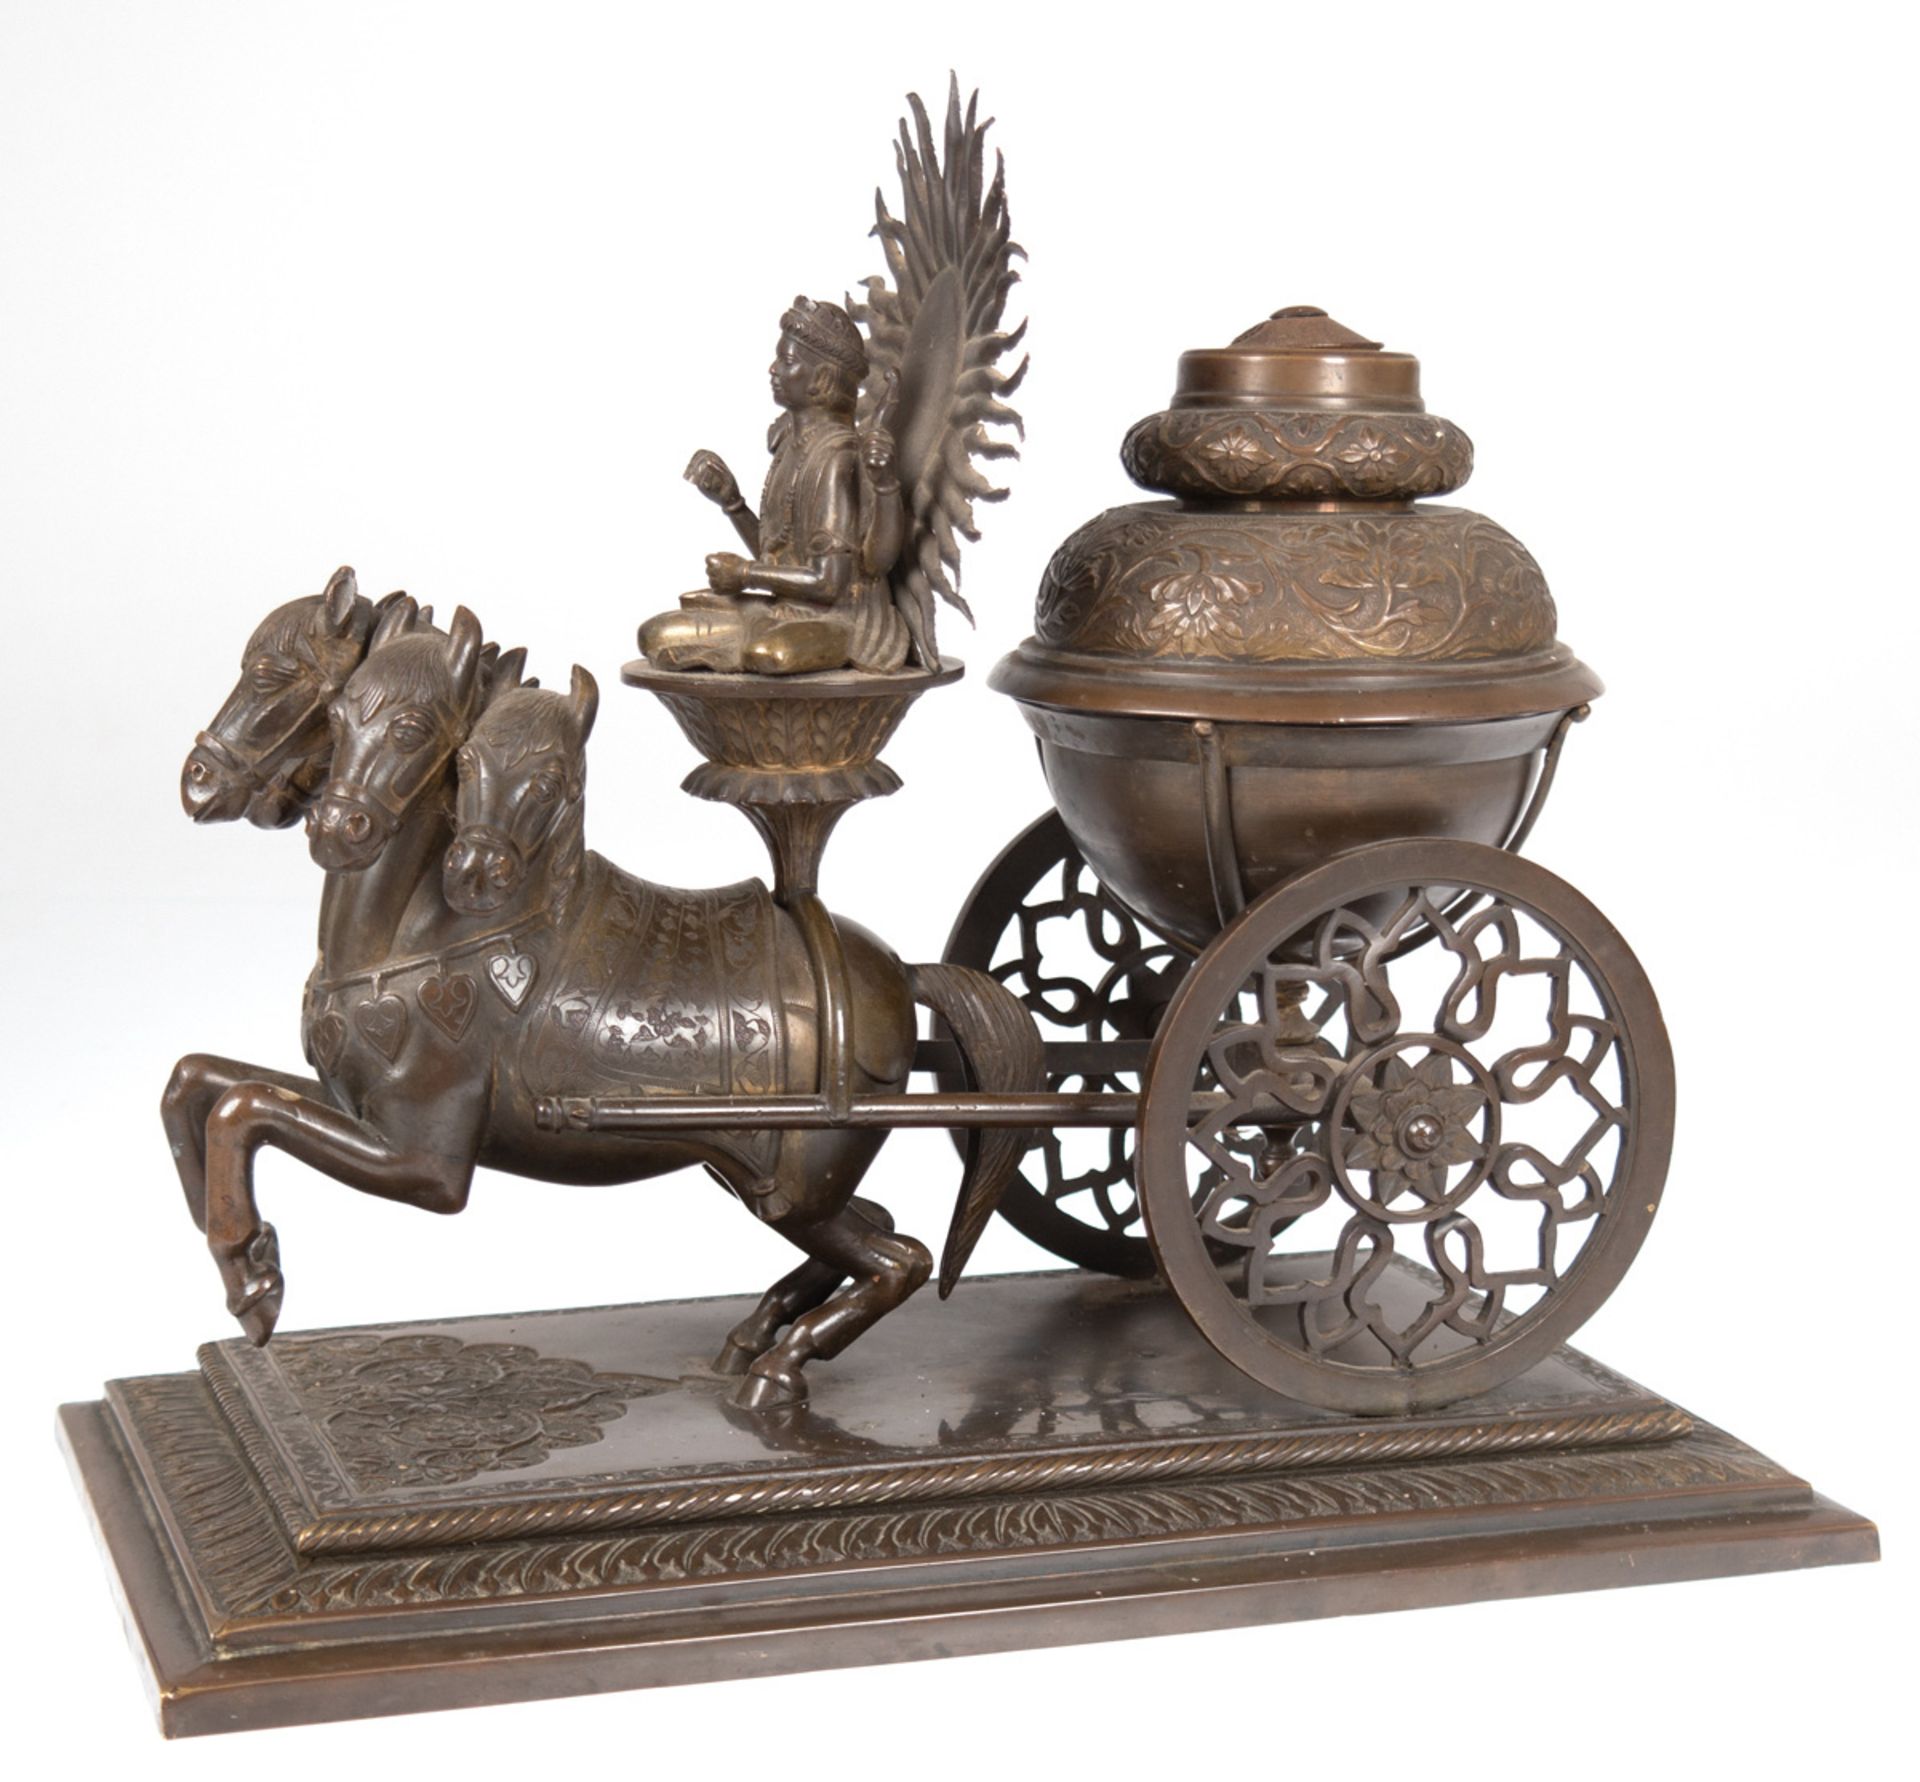 Räuchergefäß, Bronze/Messing, 5-köpfiges Pferd vor Einachser, geführt von asiatischer